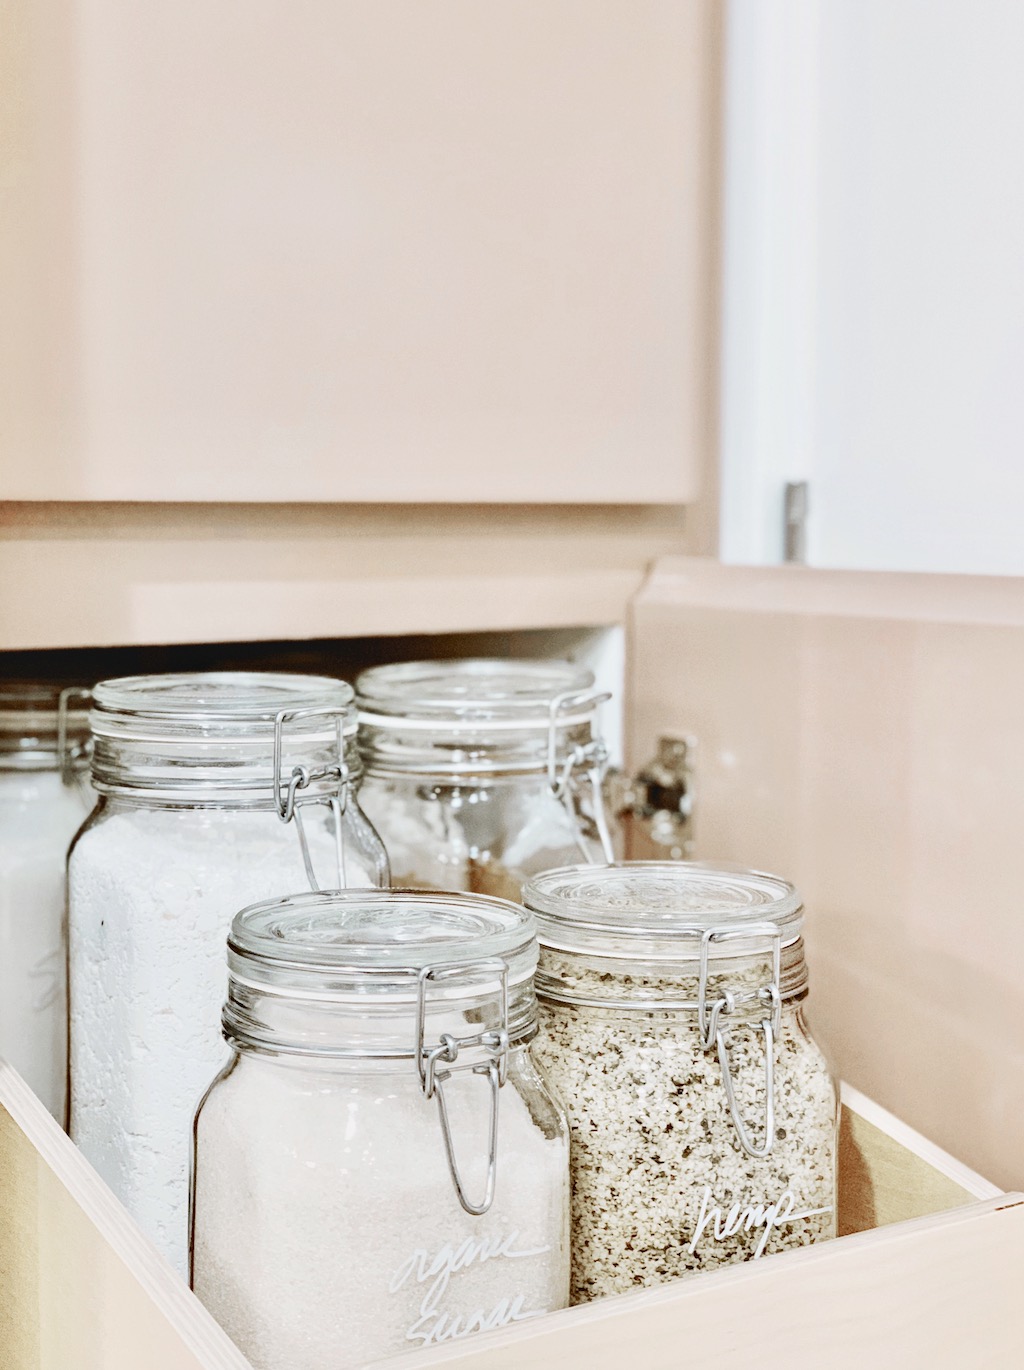 Organized pantry drawer